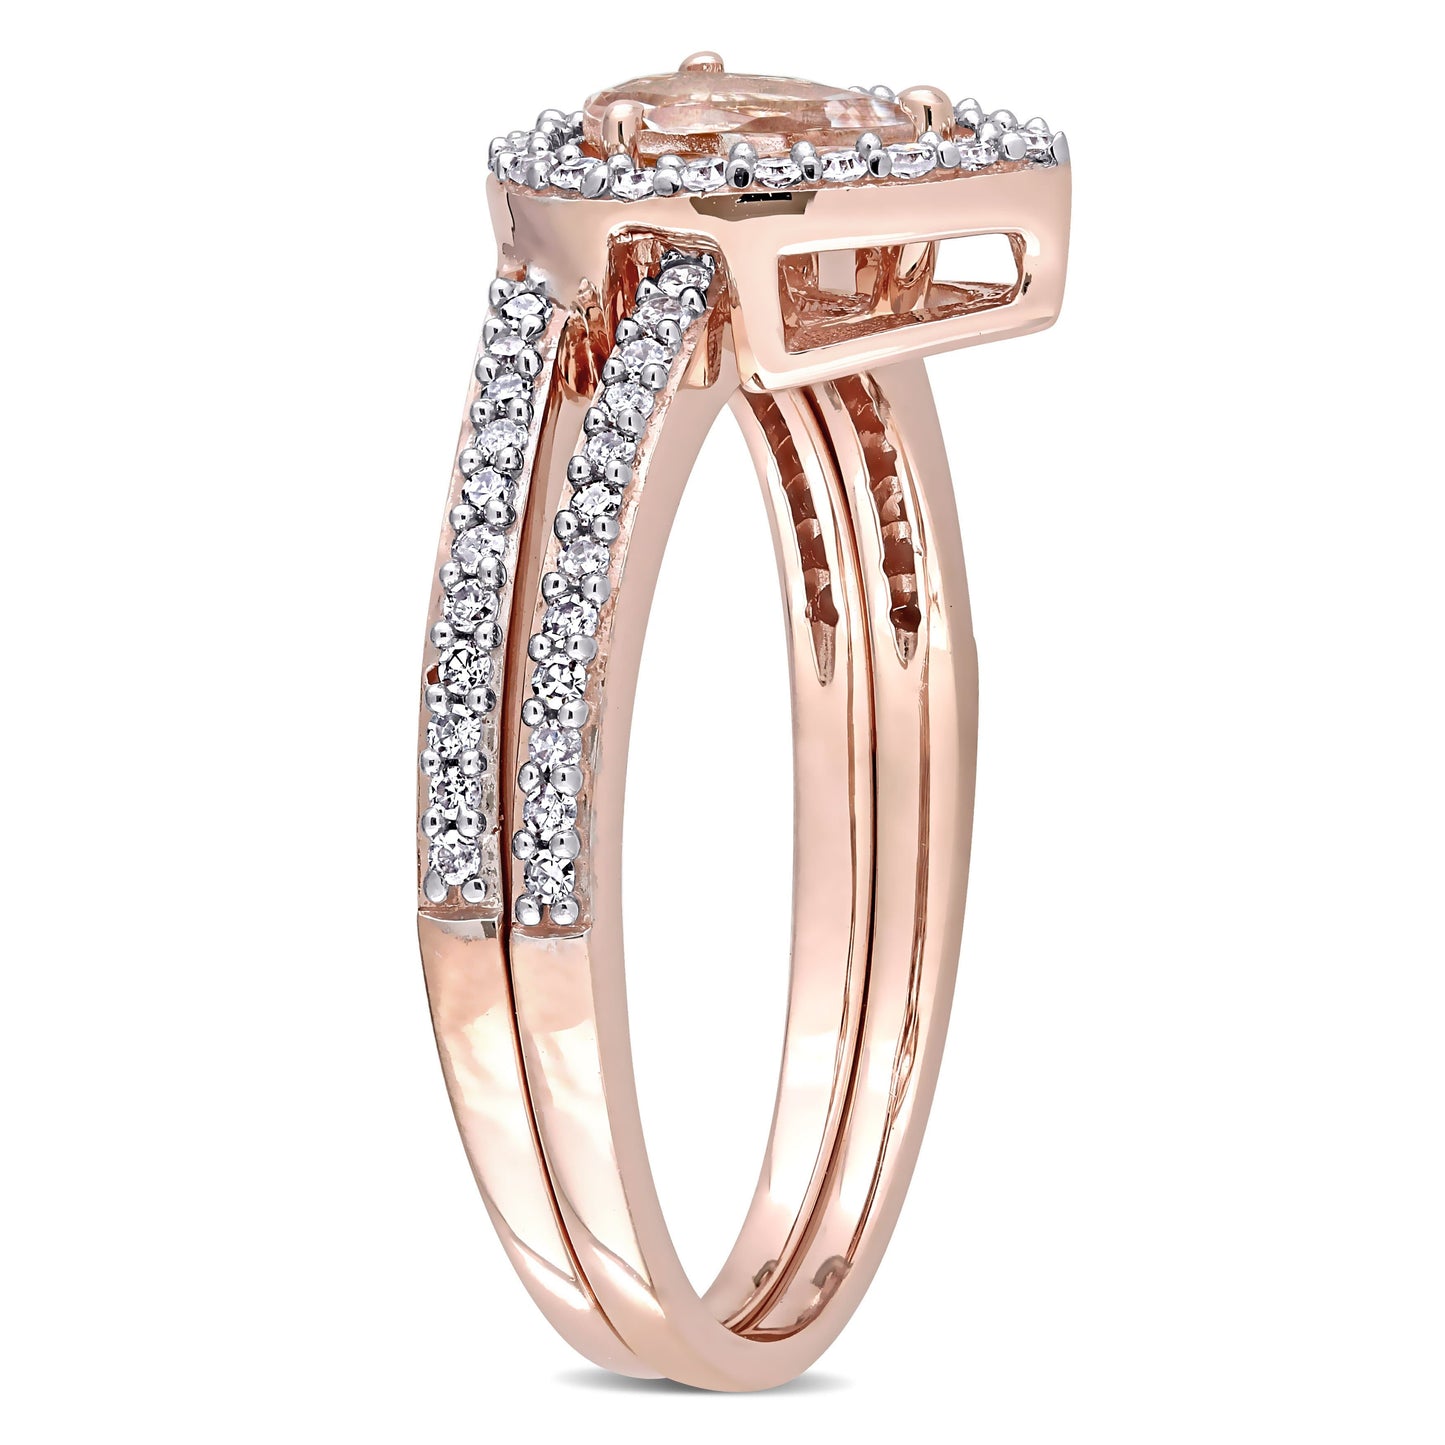 Sophia B Morganite & Diamond Halo Bridal Set in 10k Rose Gold